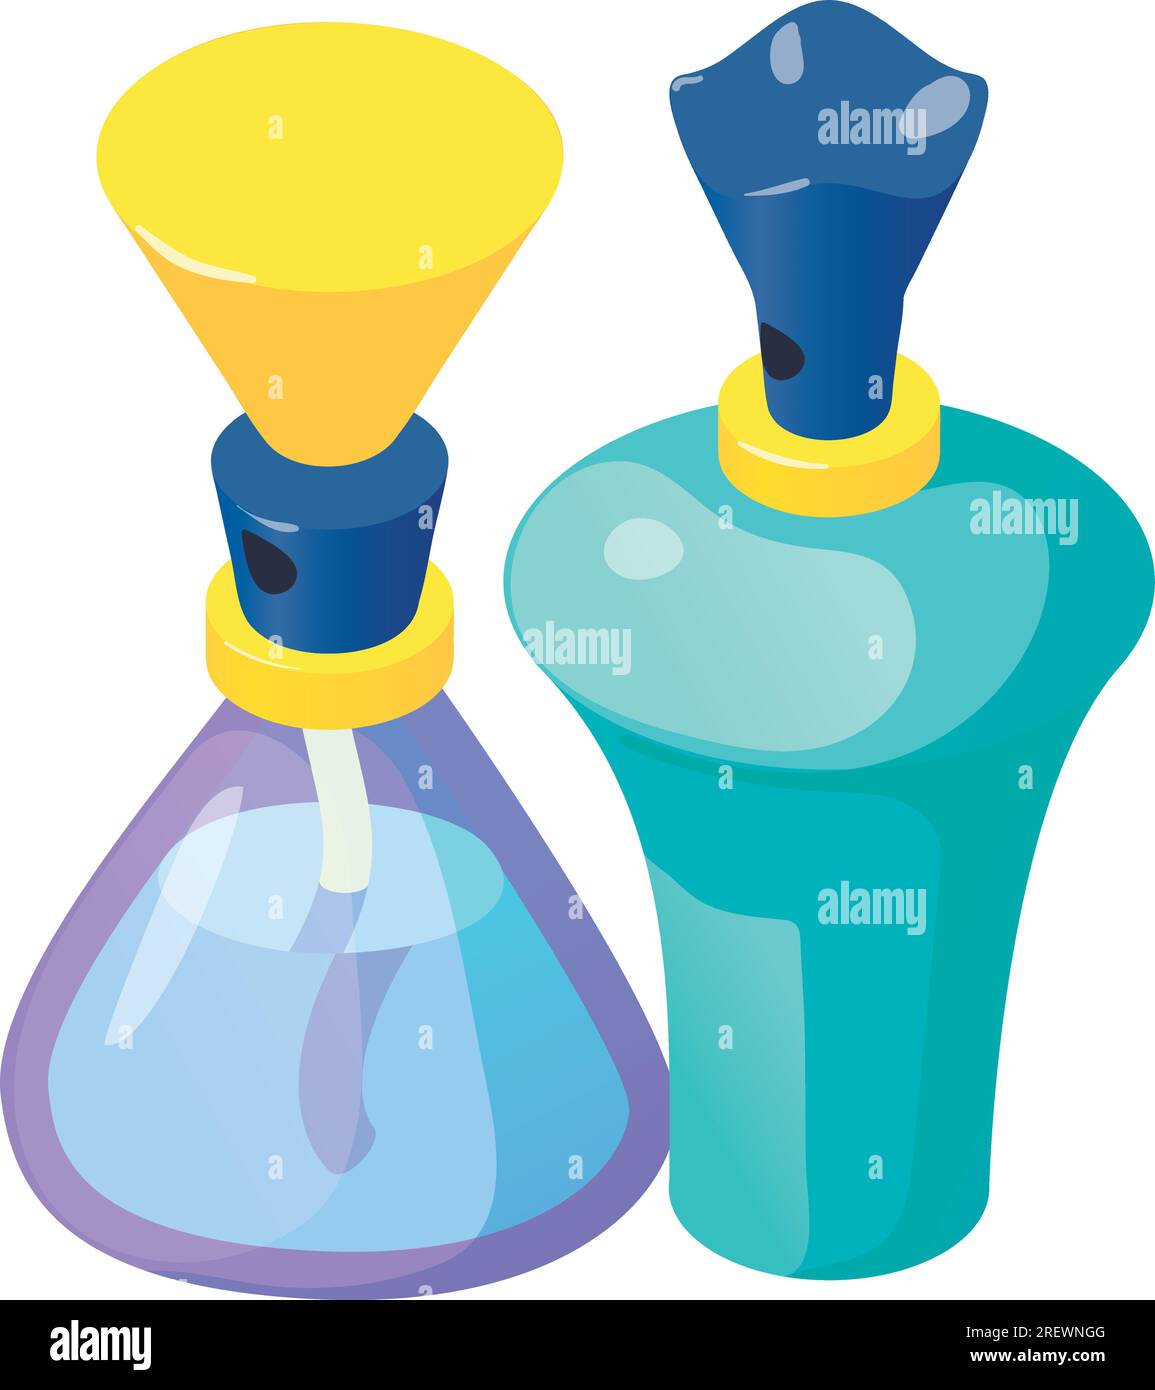 Isometrischer Vektor des Parfümflaschen-Symbols. Bunte Glasflasche mit zwei verschiedenen Parfümflaschen. Parfümerie, kosmetisch Stock Vektor